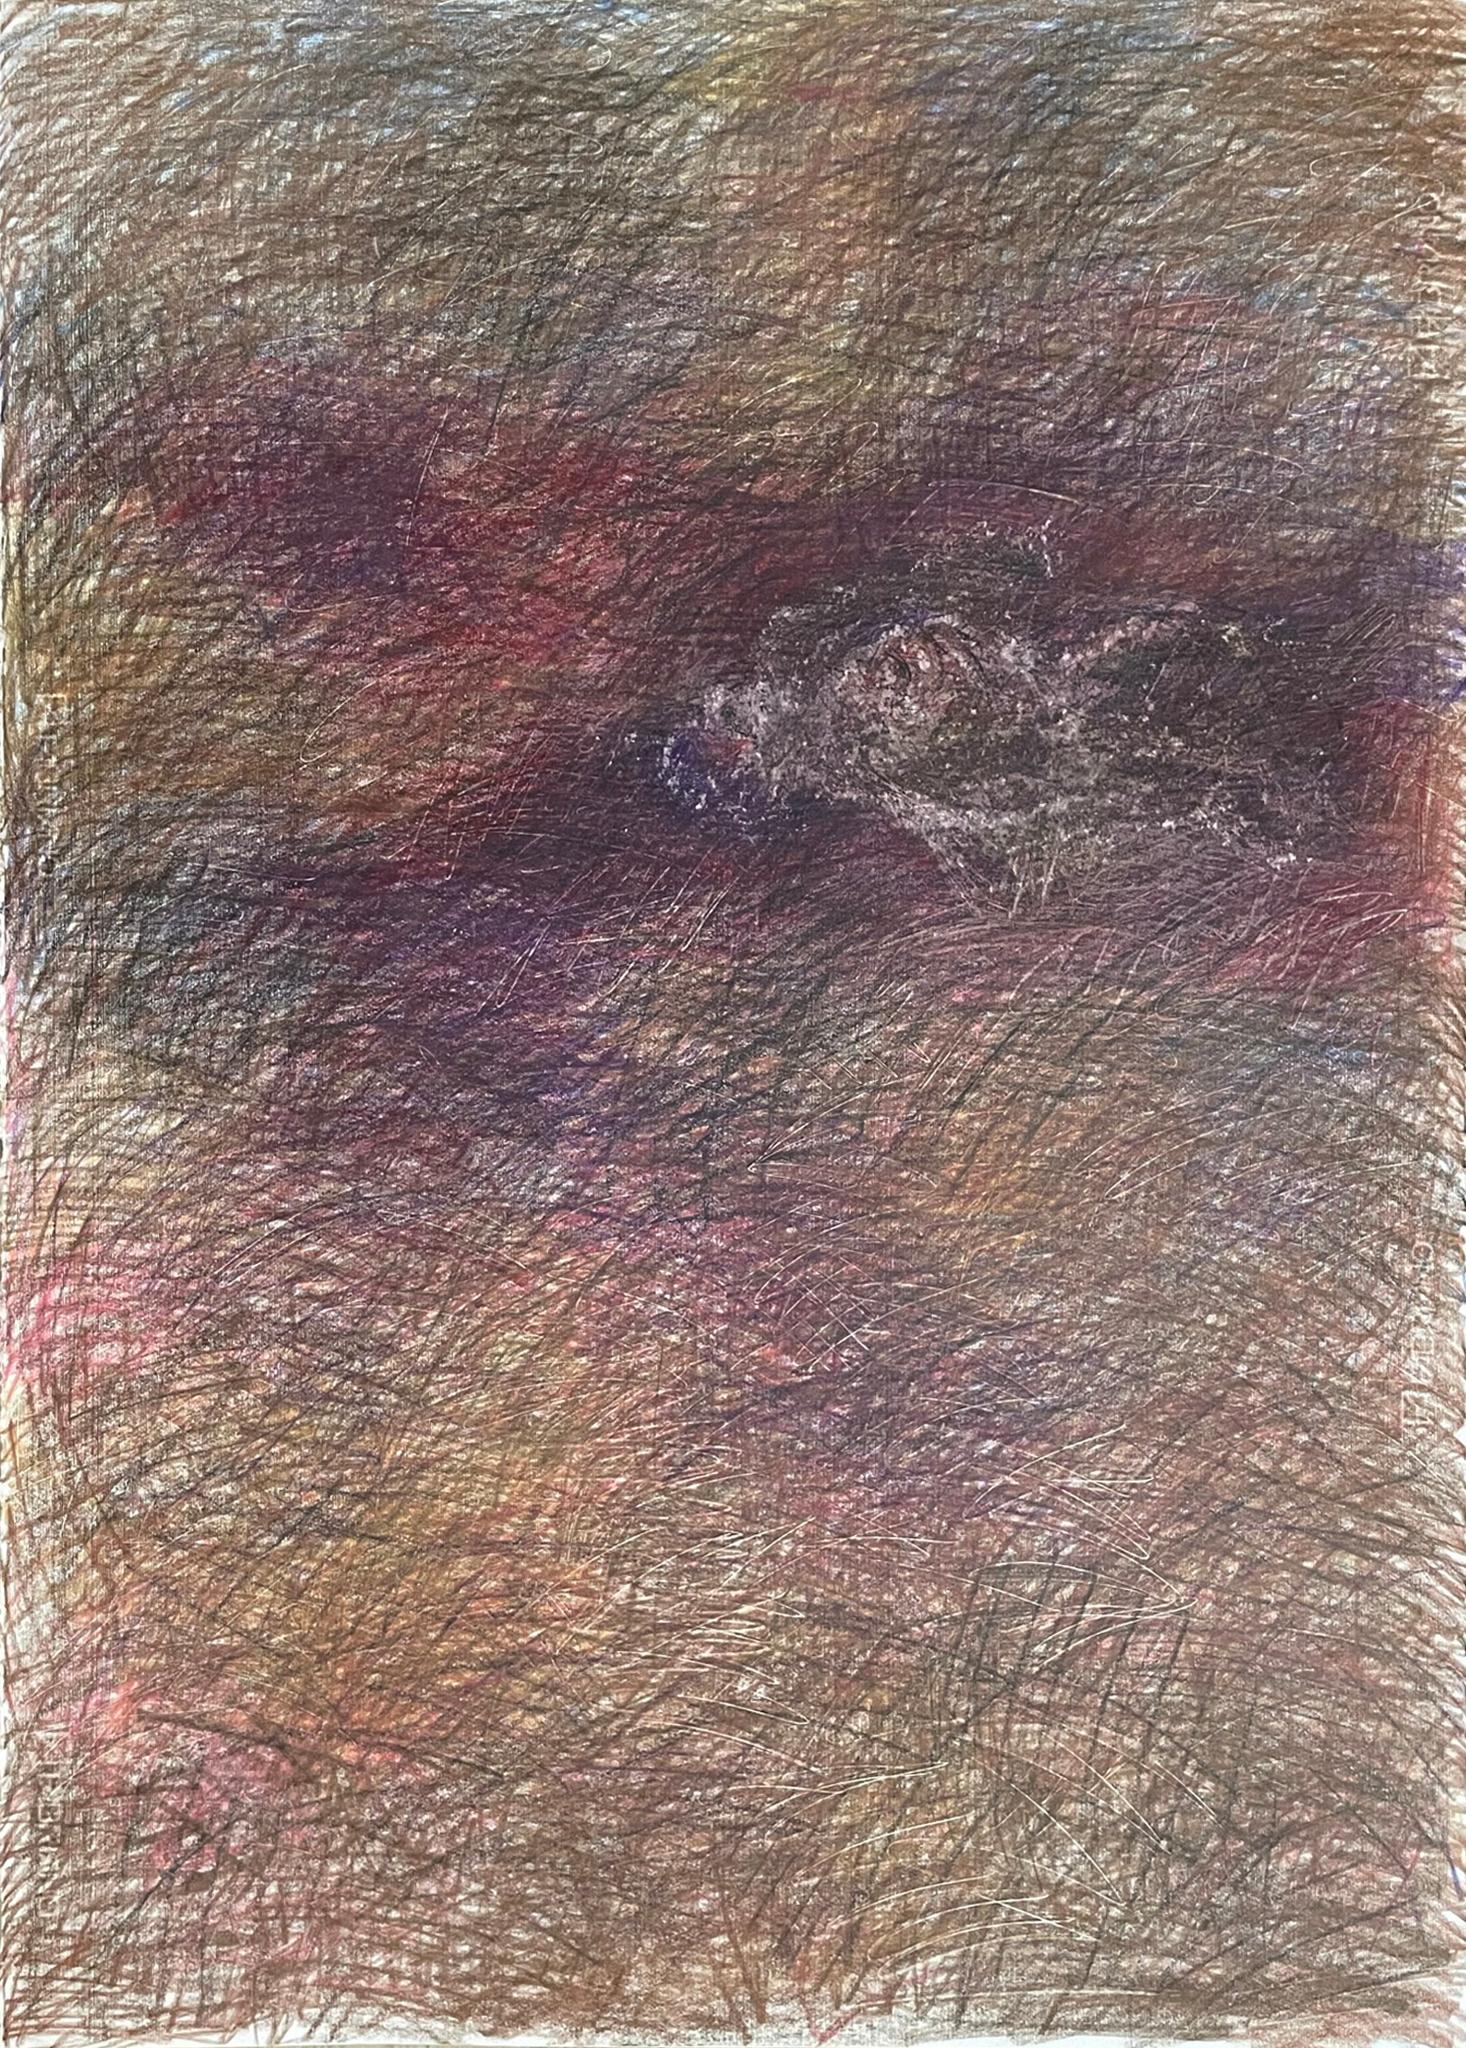 Untitled_Remains Body on the Field - Zeitgenössisch, 21. Jahrhundert, Zeichnung